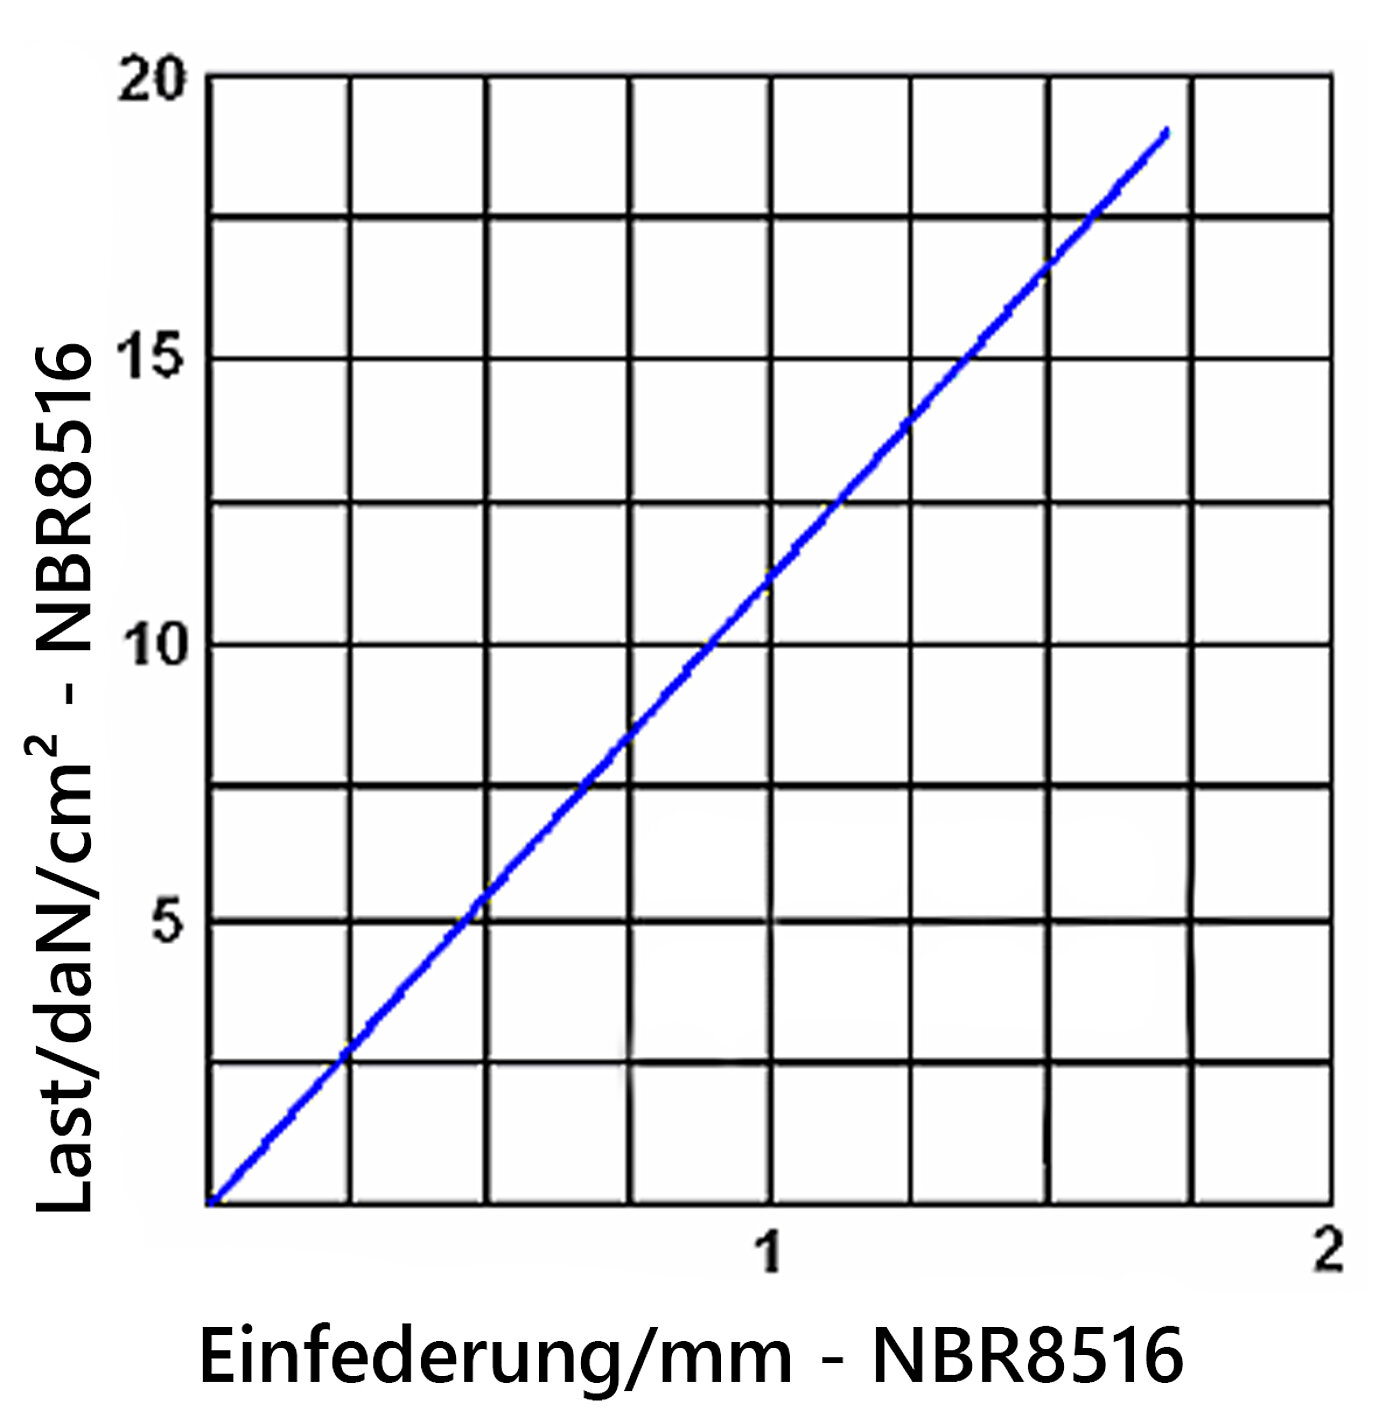 Diagramm der Einfederung der Elastomerplatte NBR8516 unter Last